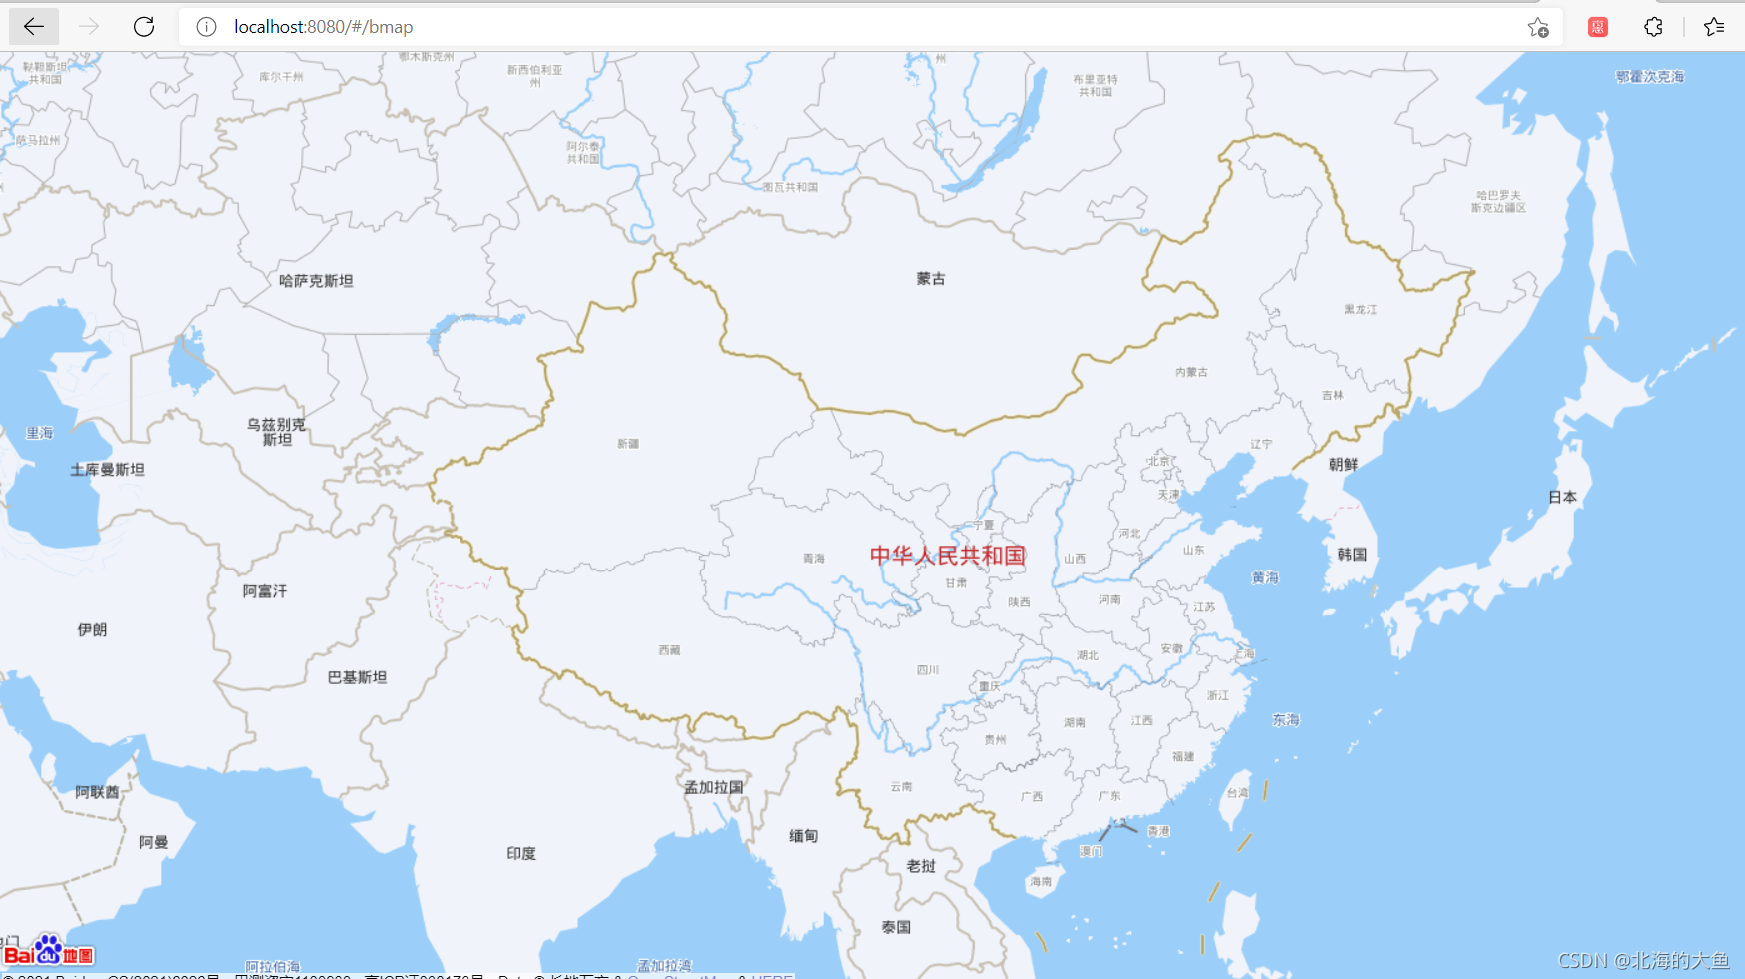 vue中使用vue-echarts引入百度地图实现数据可视化